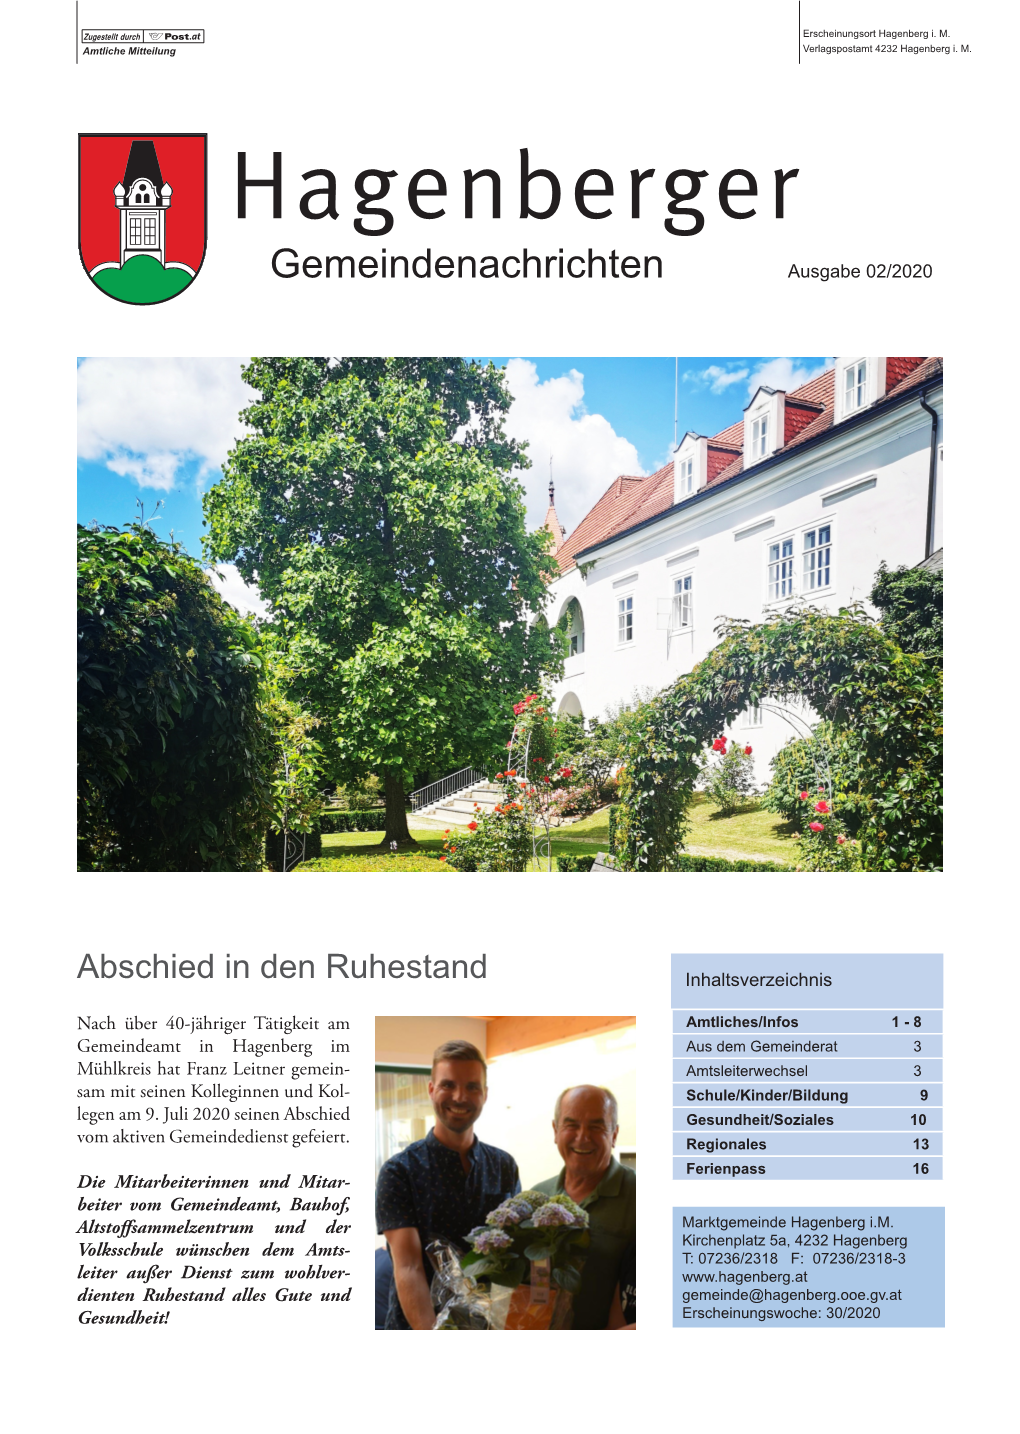 Hagenberger Gemeindenachrichten 2020/2